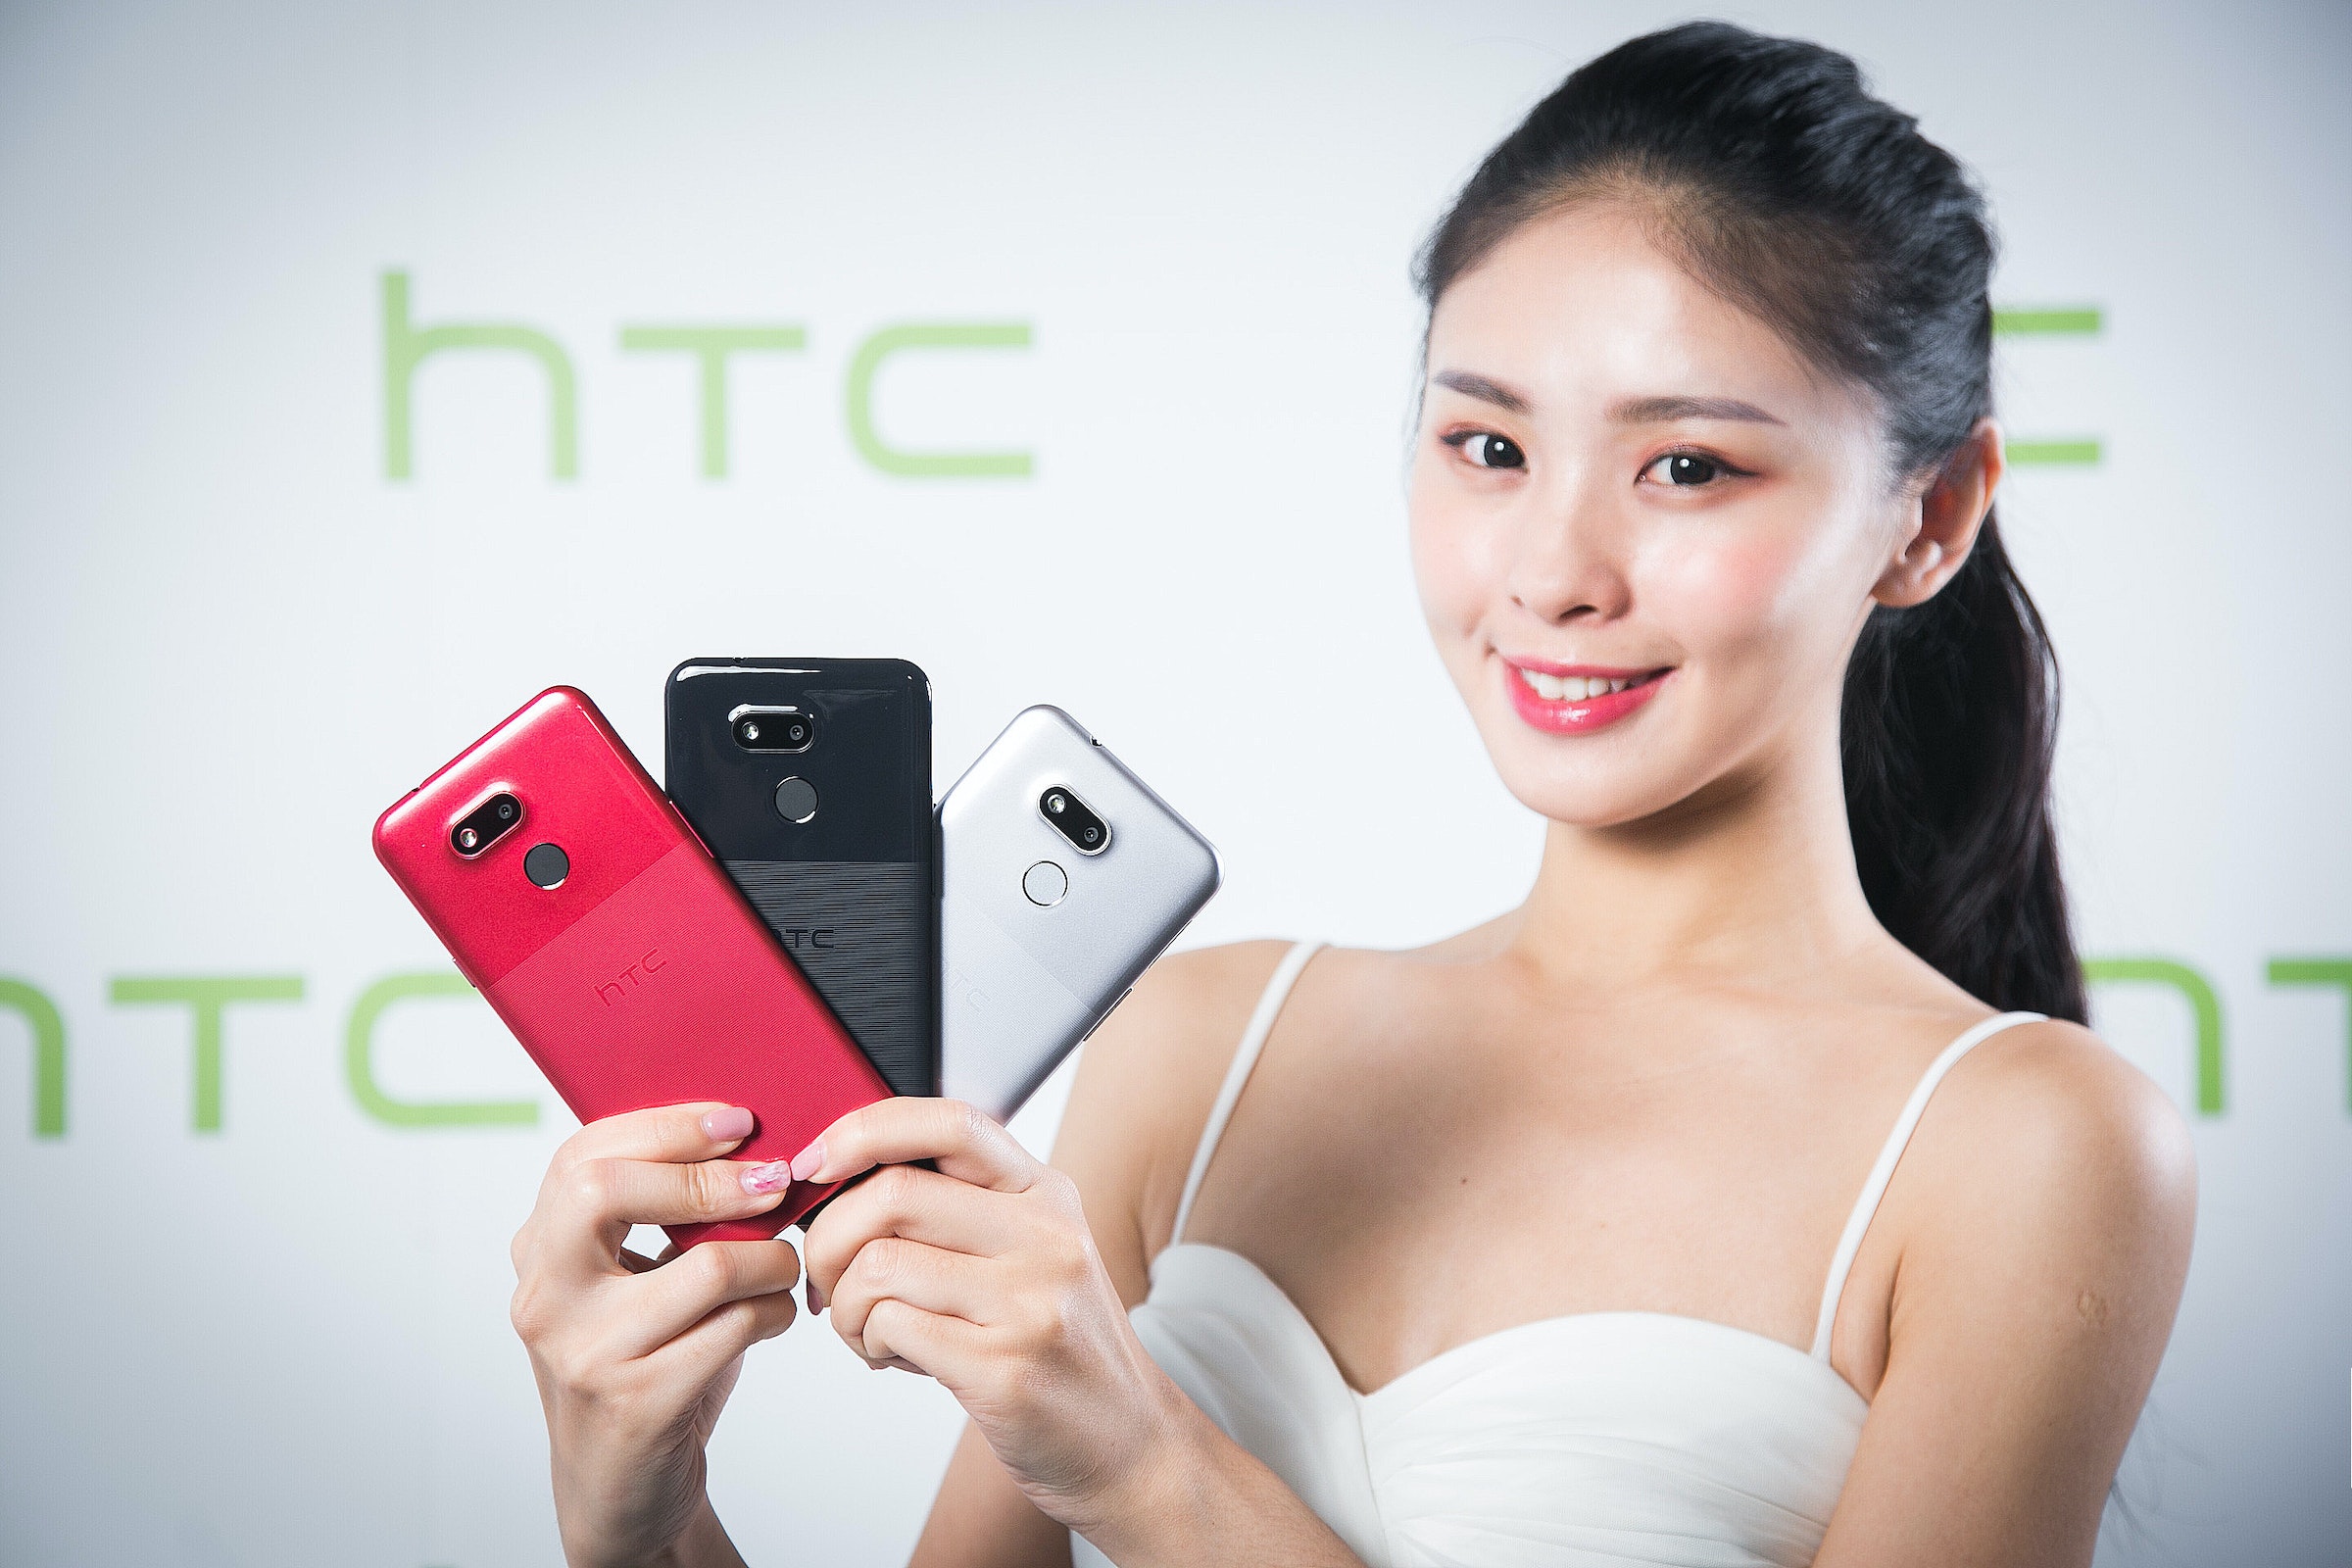 HTC Desire 12+, HTC Desire, HTC Desire 300, HTC, , HTC, Smartphone, HTC One series, HTC U12+, HTC Desire 600, HTC Desire series, Gadget, Mobile phone, Smartphone, Skin, Electronic device, Communication Device, Technology, Portable communications device, Selfie, Iphone